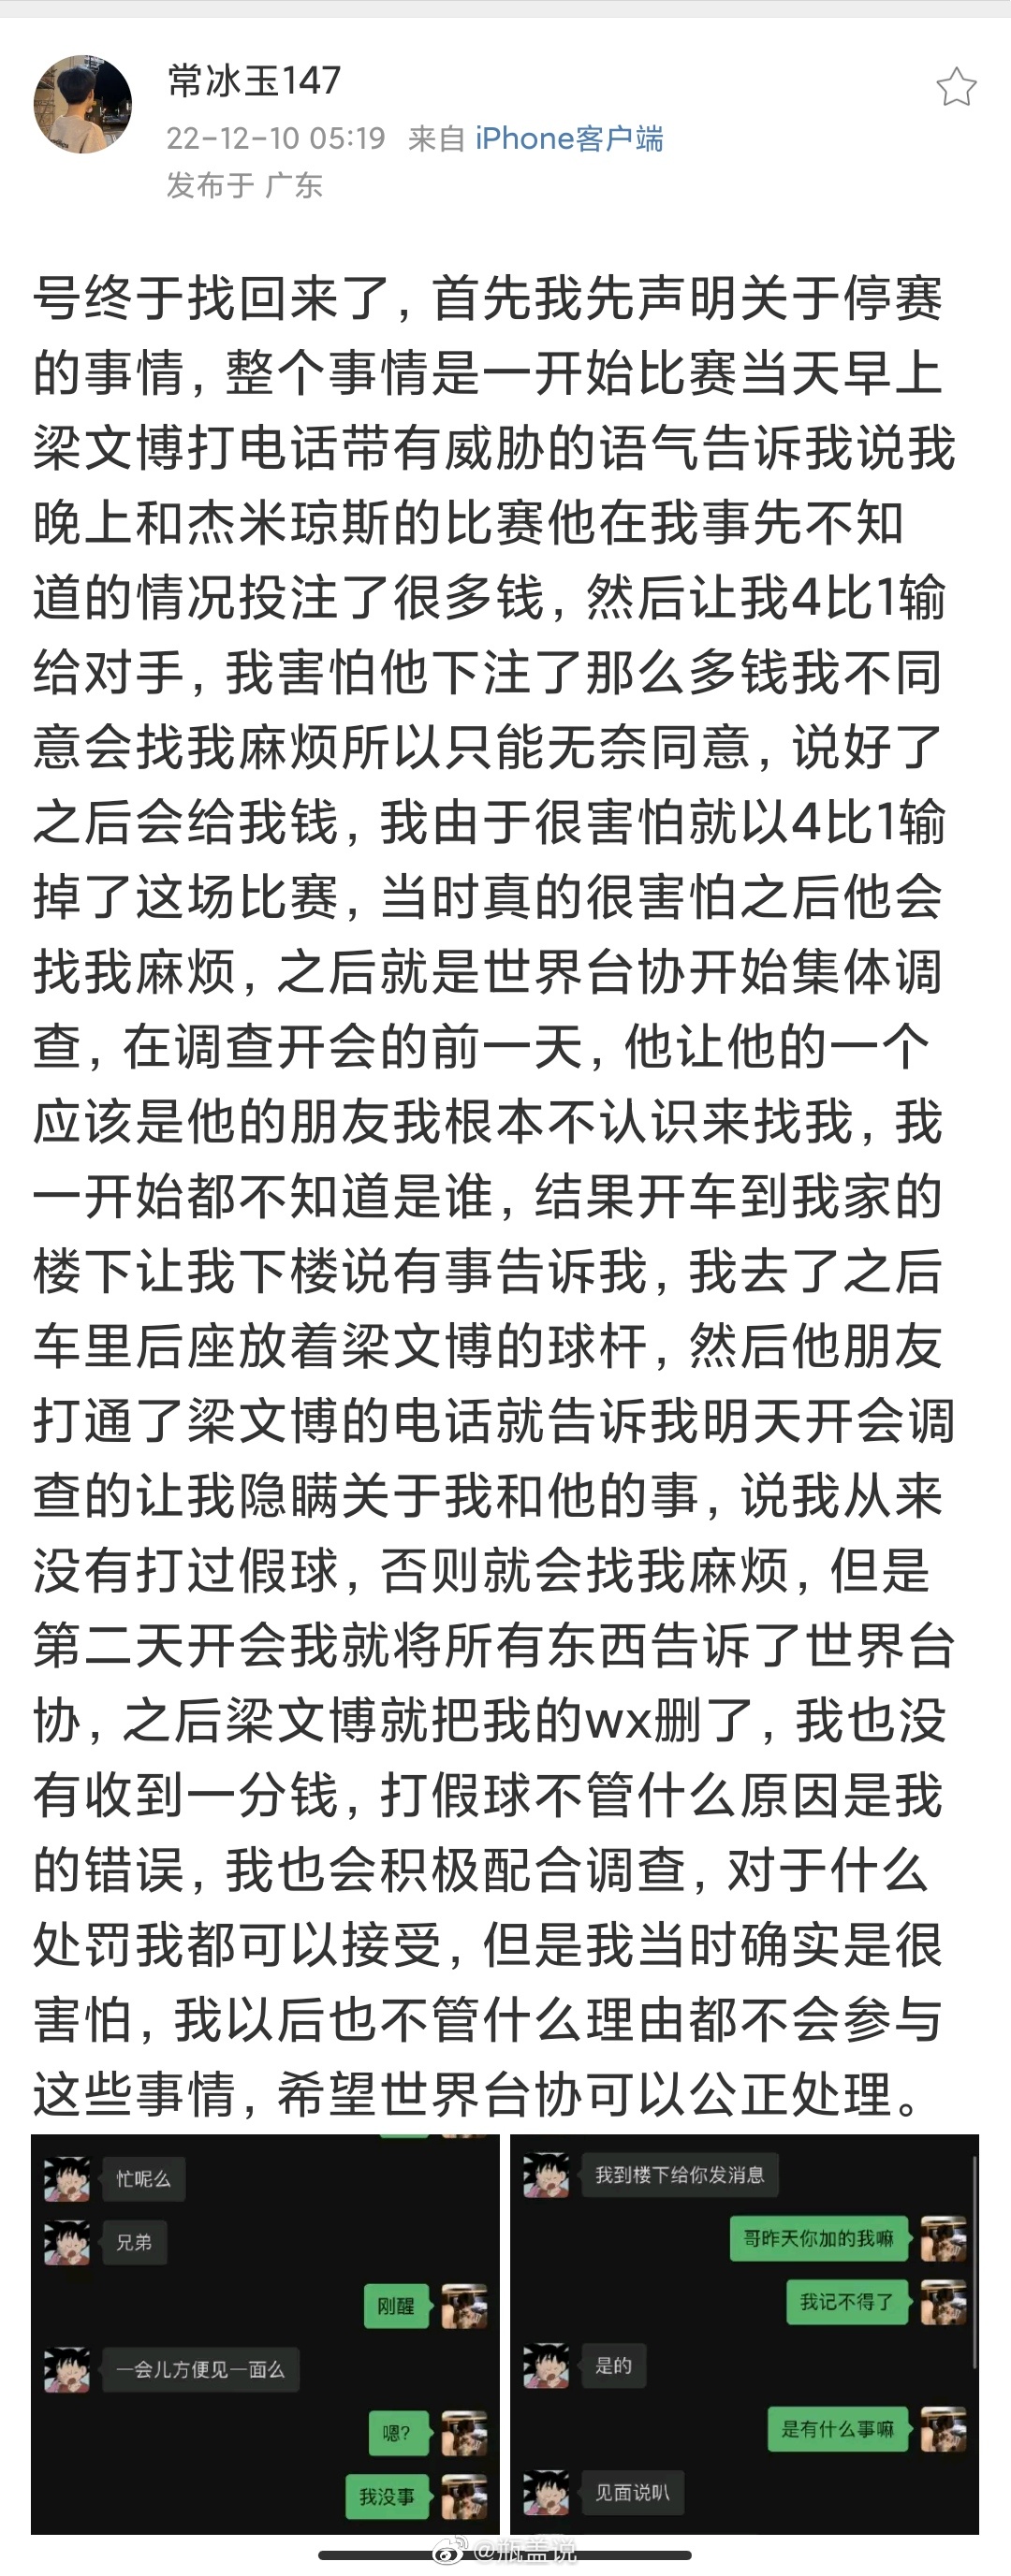 中国斯诺克选手常冰玉发文，称自己受梁文博的威胁被迫打假球